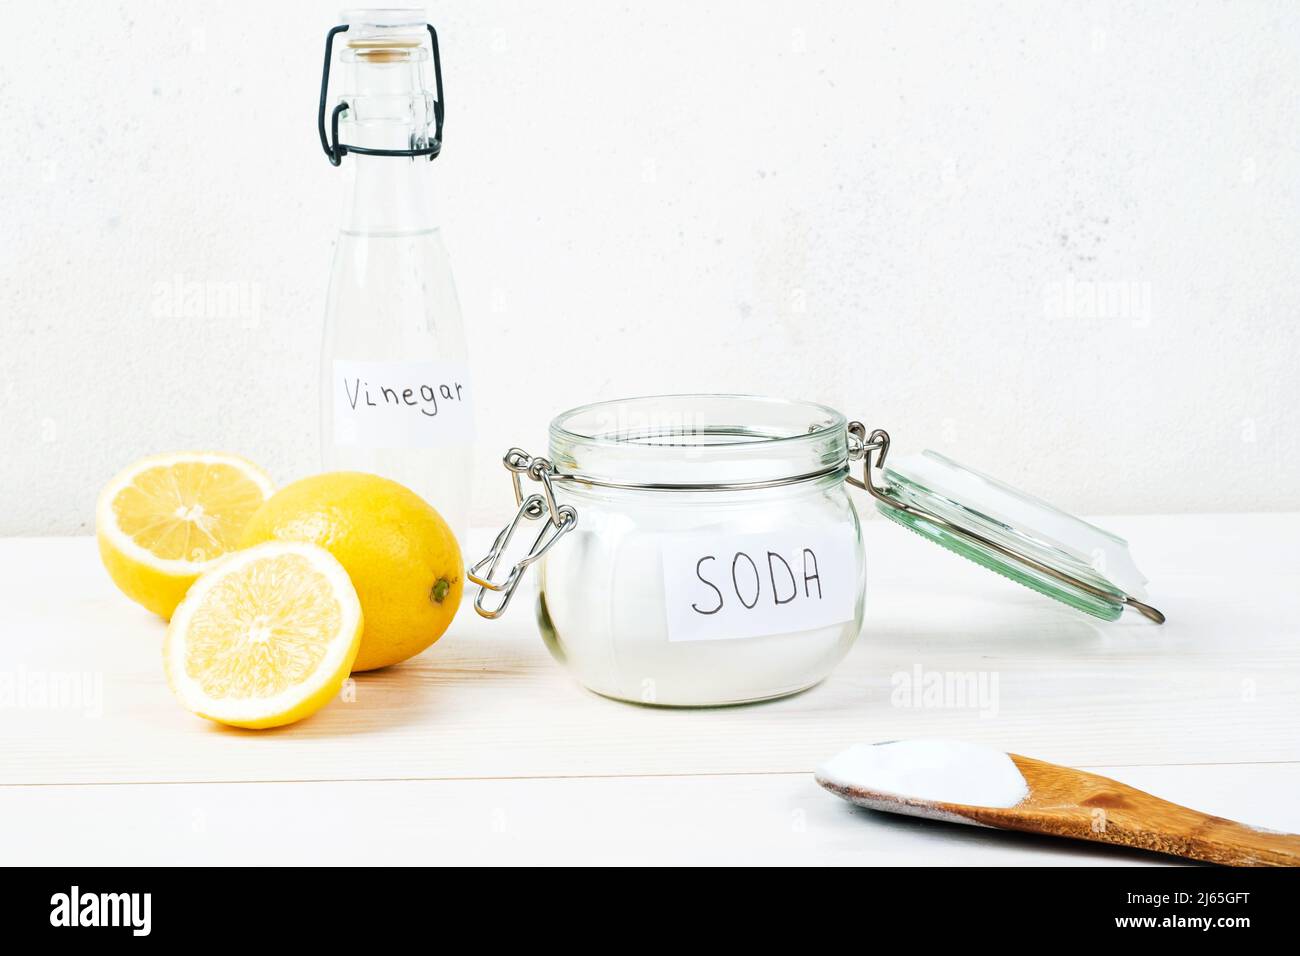 Bicarbonato di sodio in vaso, aceto, limone, cucchiaio di legno su sfondo bianco. Il concetto di rimozione delle macchie sui vestiti. Foto di alta qualità Foto Stock